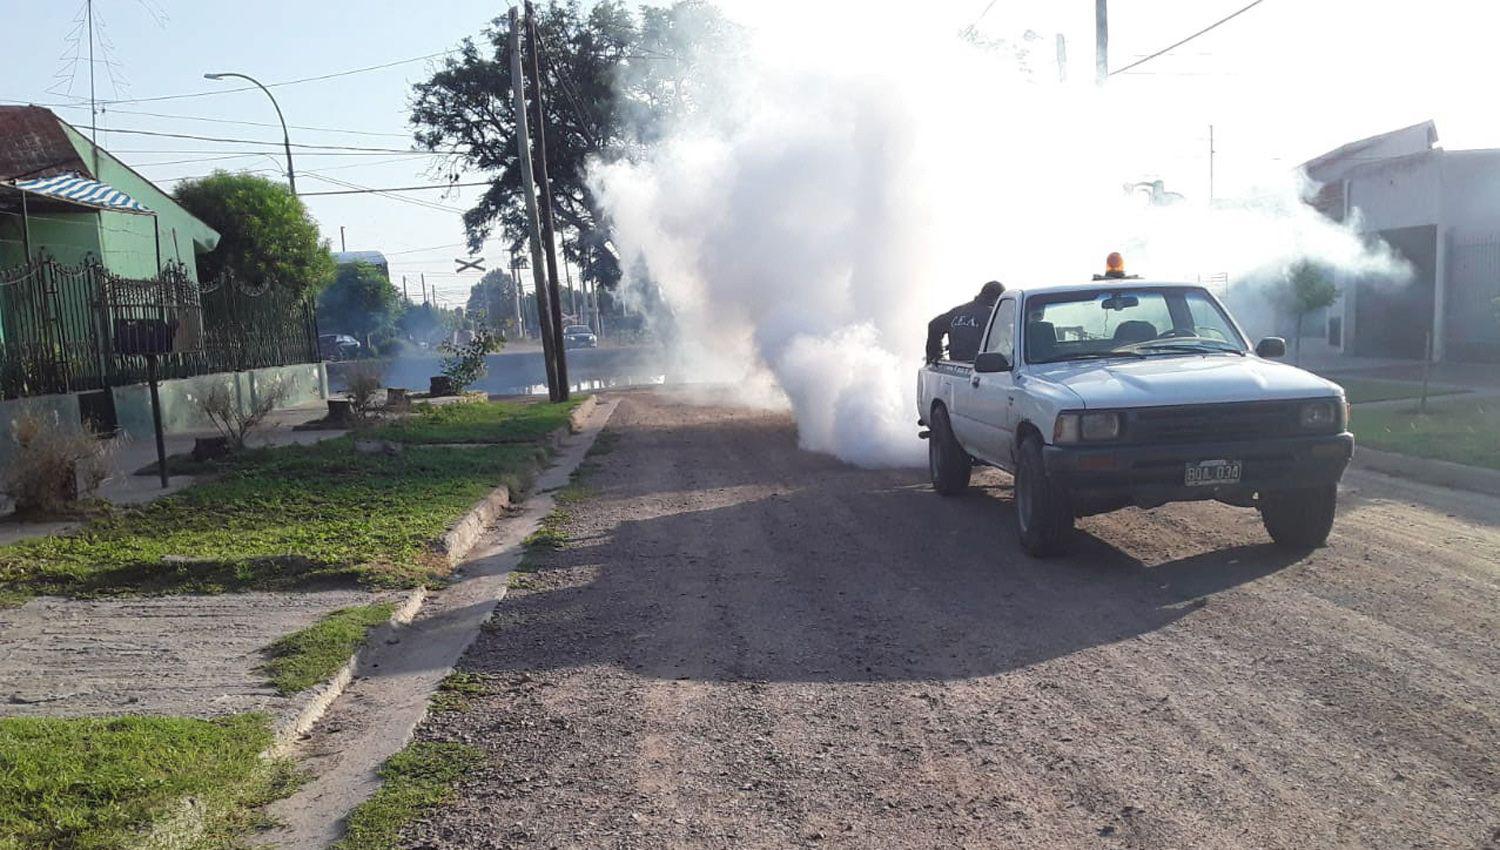 La comuna combate la proliferacioacuten de insectos y alimantildeas con la fumigacioacuten en los barrios bandentildeos